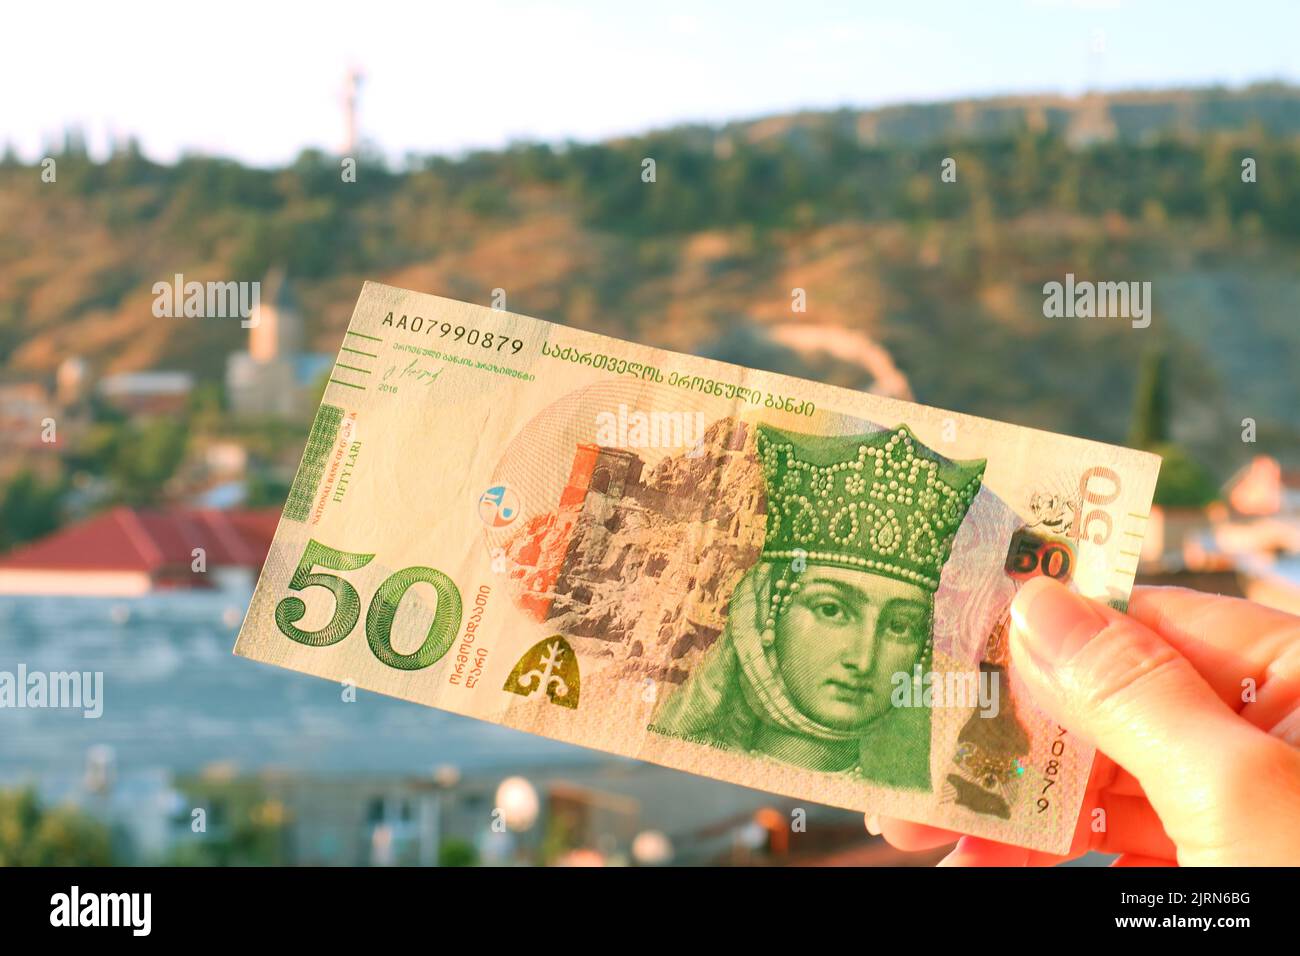 50 billets de banque géorgiens Lari en face de l'Obverse, avec vue floue de la ville de Tbilissi en toile de fond Banque D'Images